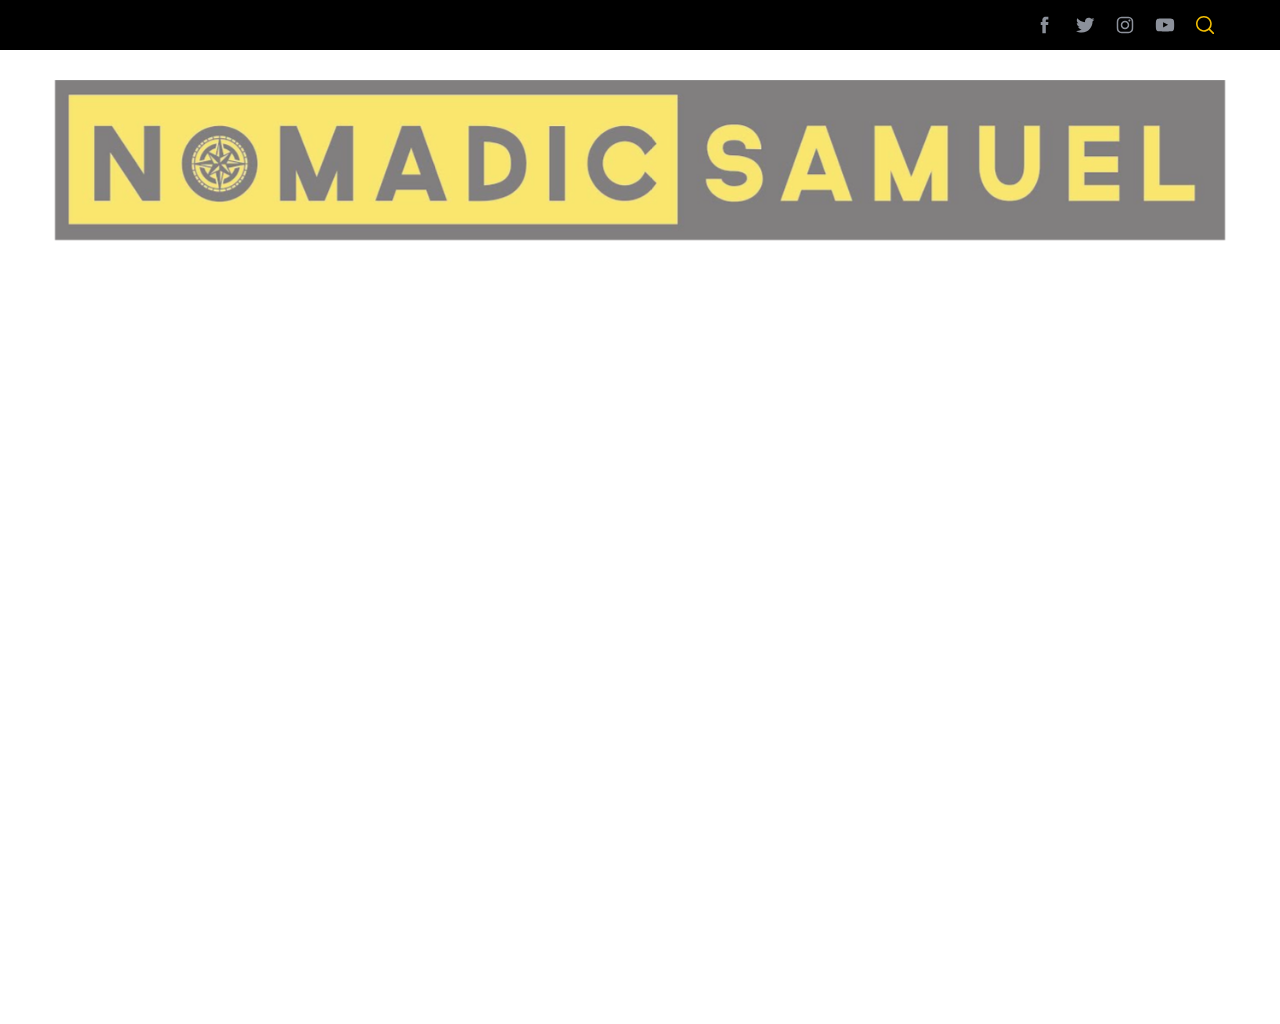 nomadicsamuel.com